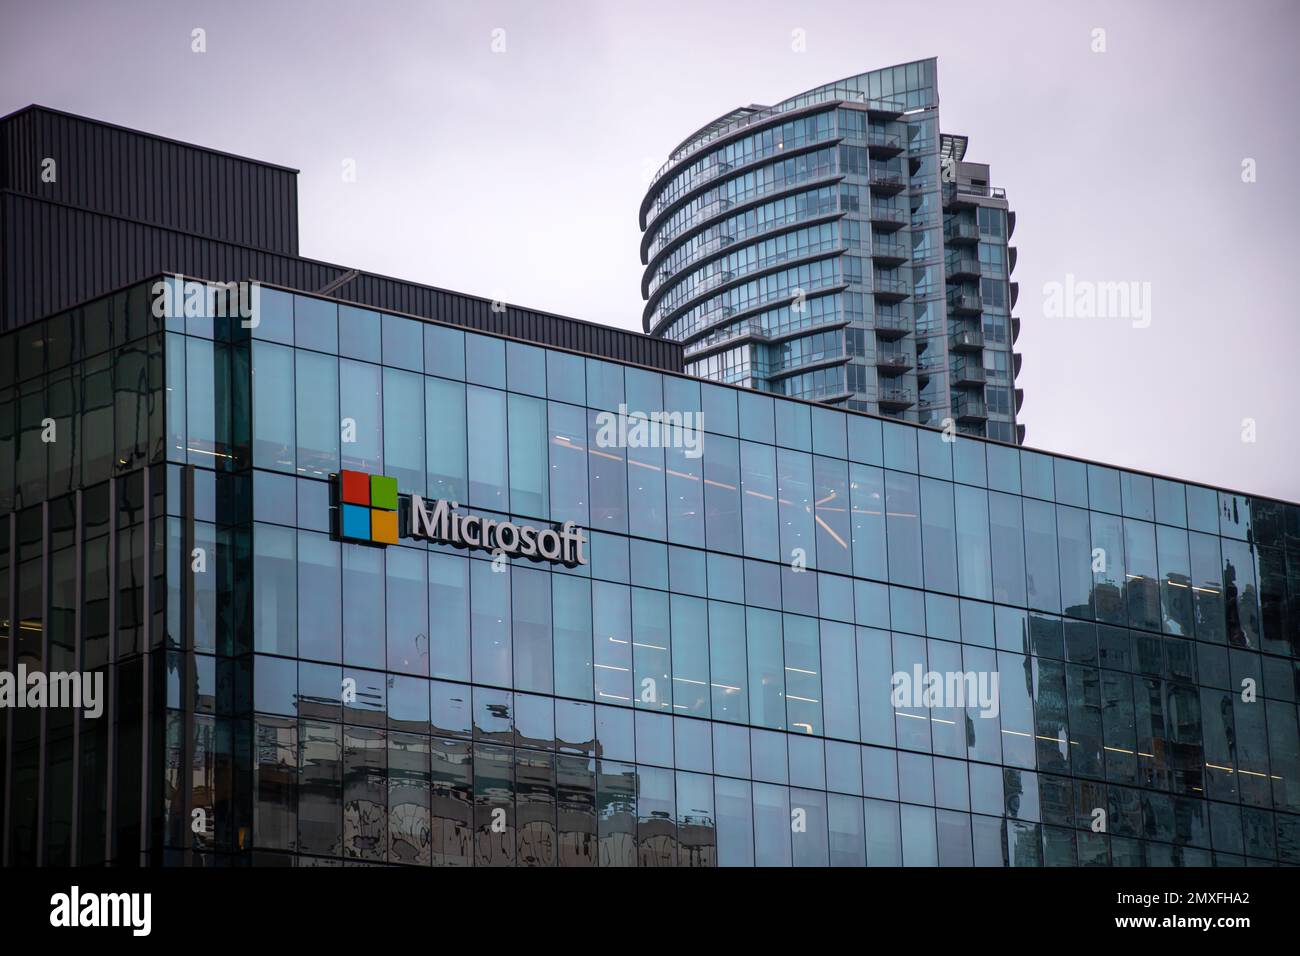 Bürogebäude von Microsoft und Schild in der Innenstadt. Microsoft ist ein US-amerikanisches Technologieunternehmen, das Software, Elektronik, Computer und verwandte Dienstleistungen herstellt Stockfoto